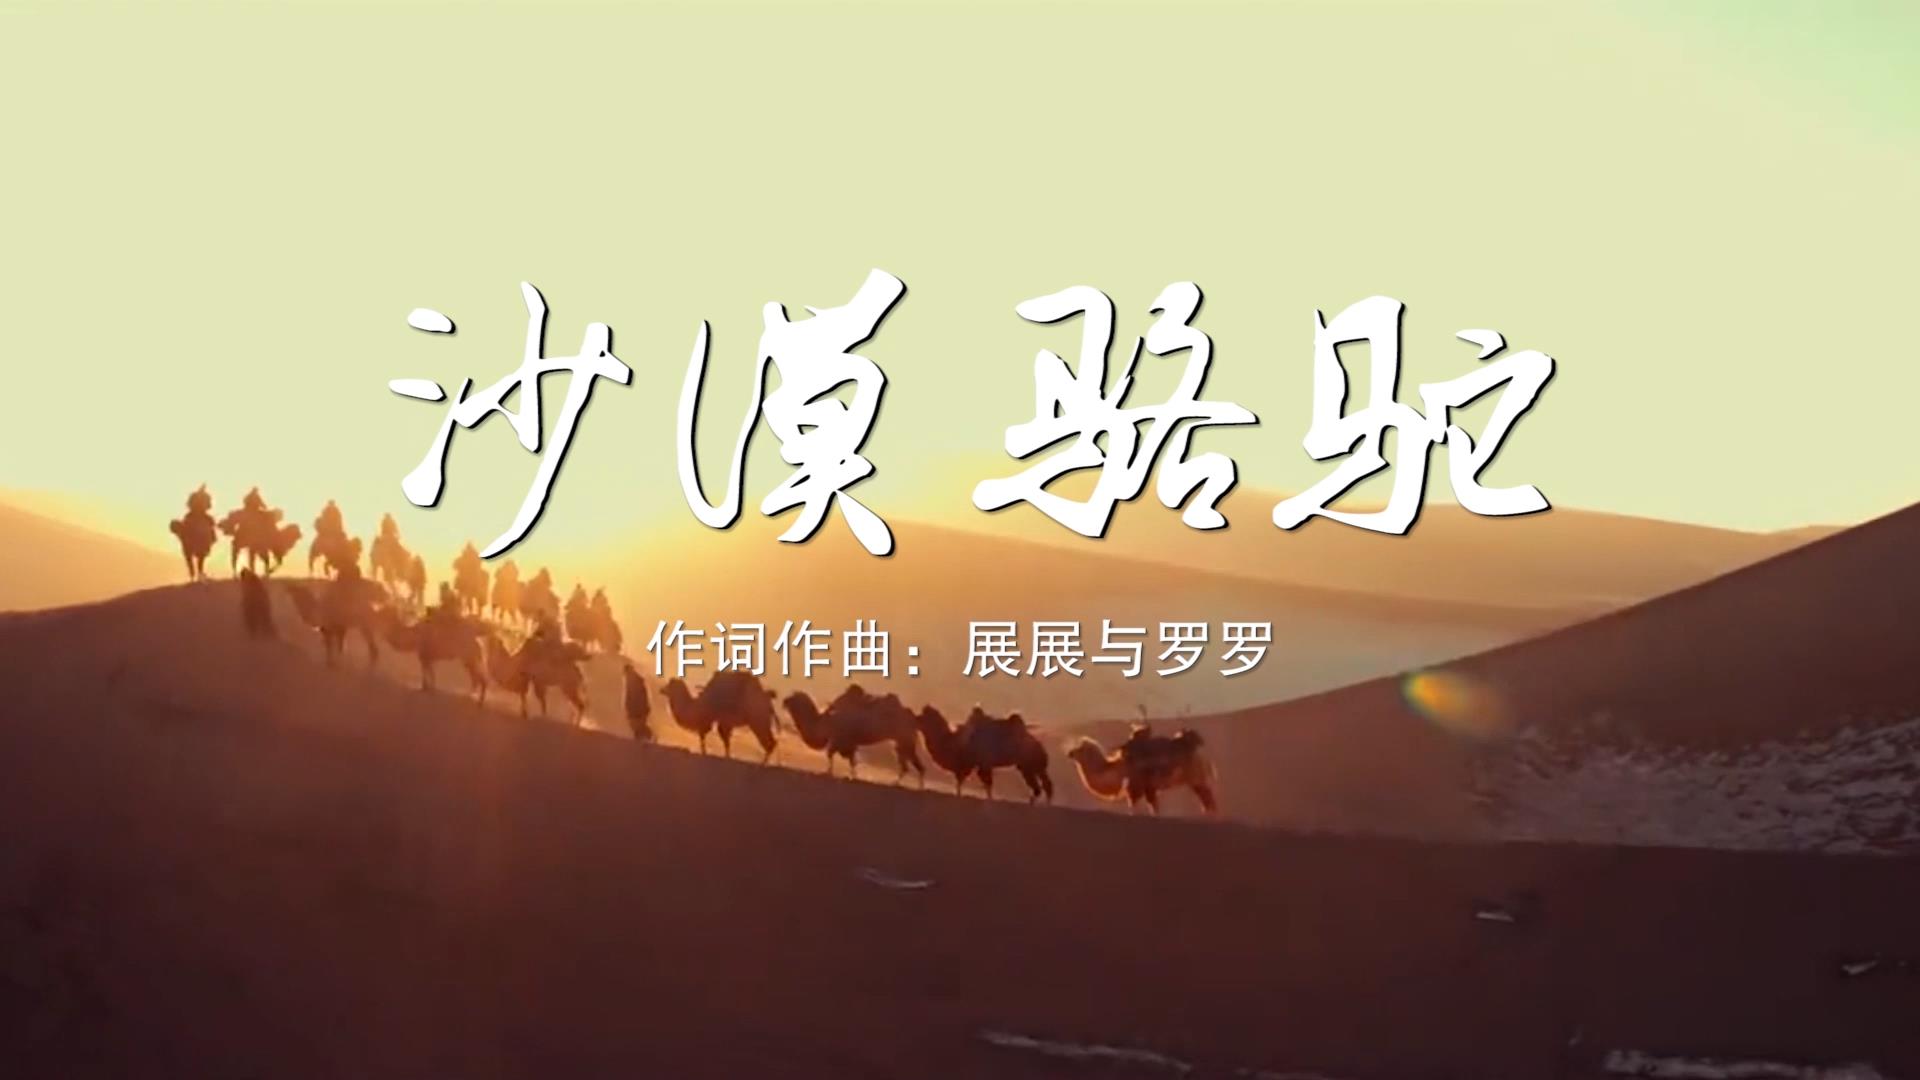 沙漠骆驼 MV字幕配乐伴奏舞台演出LED背景大屏幕视频素材TV